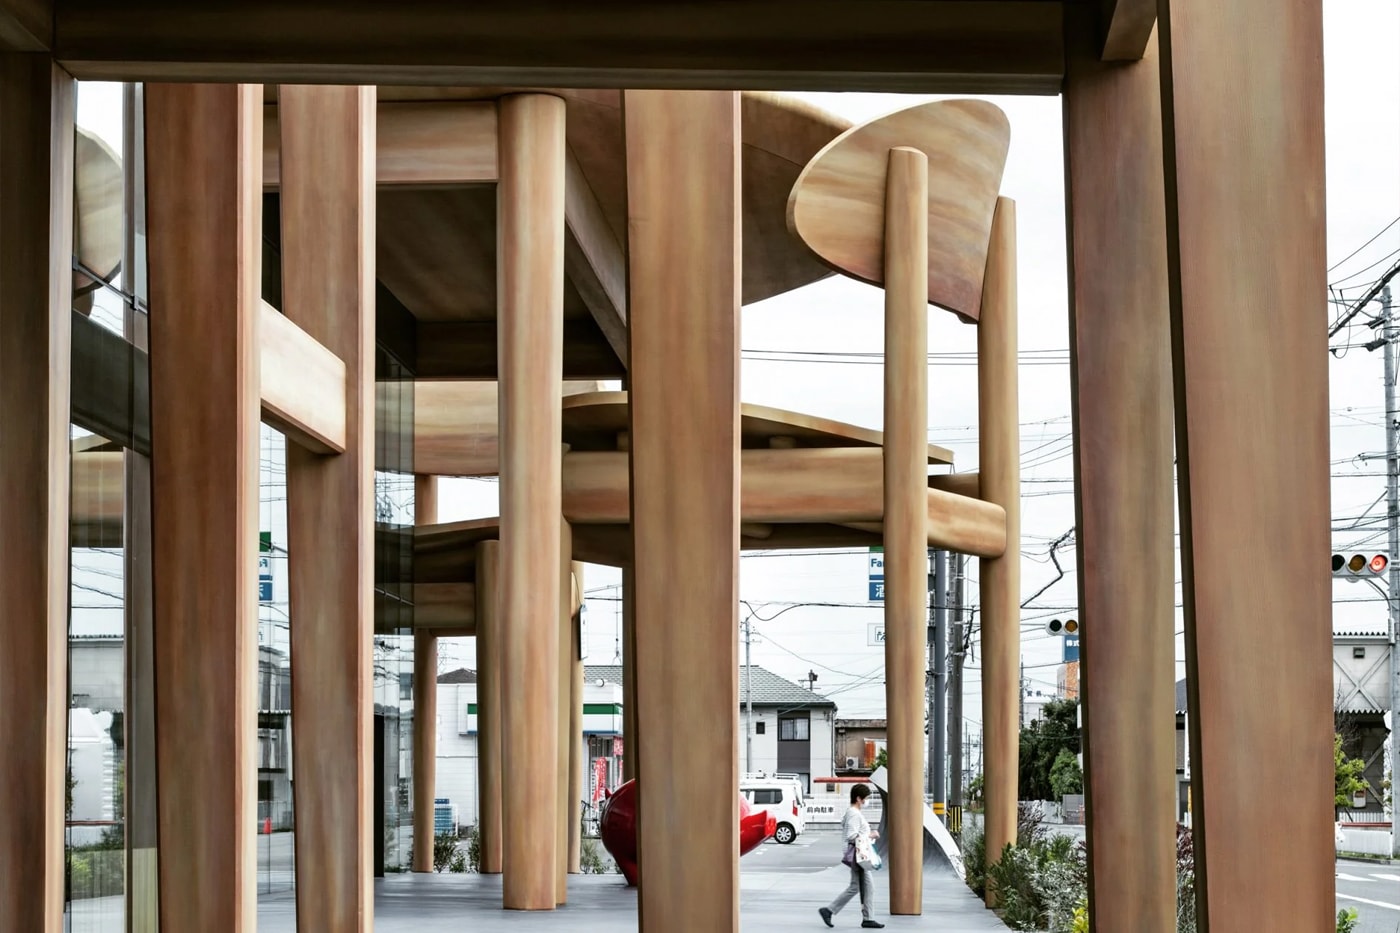 近賞日建設計操刀超巨大桌椅造型建築「SWEETS BANK」